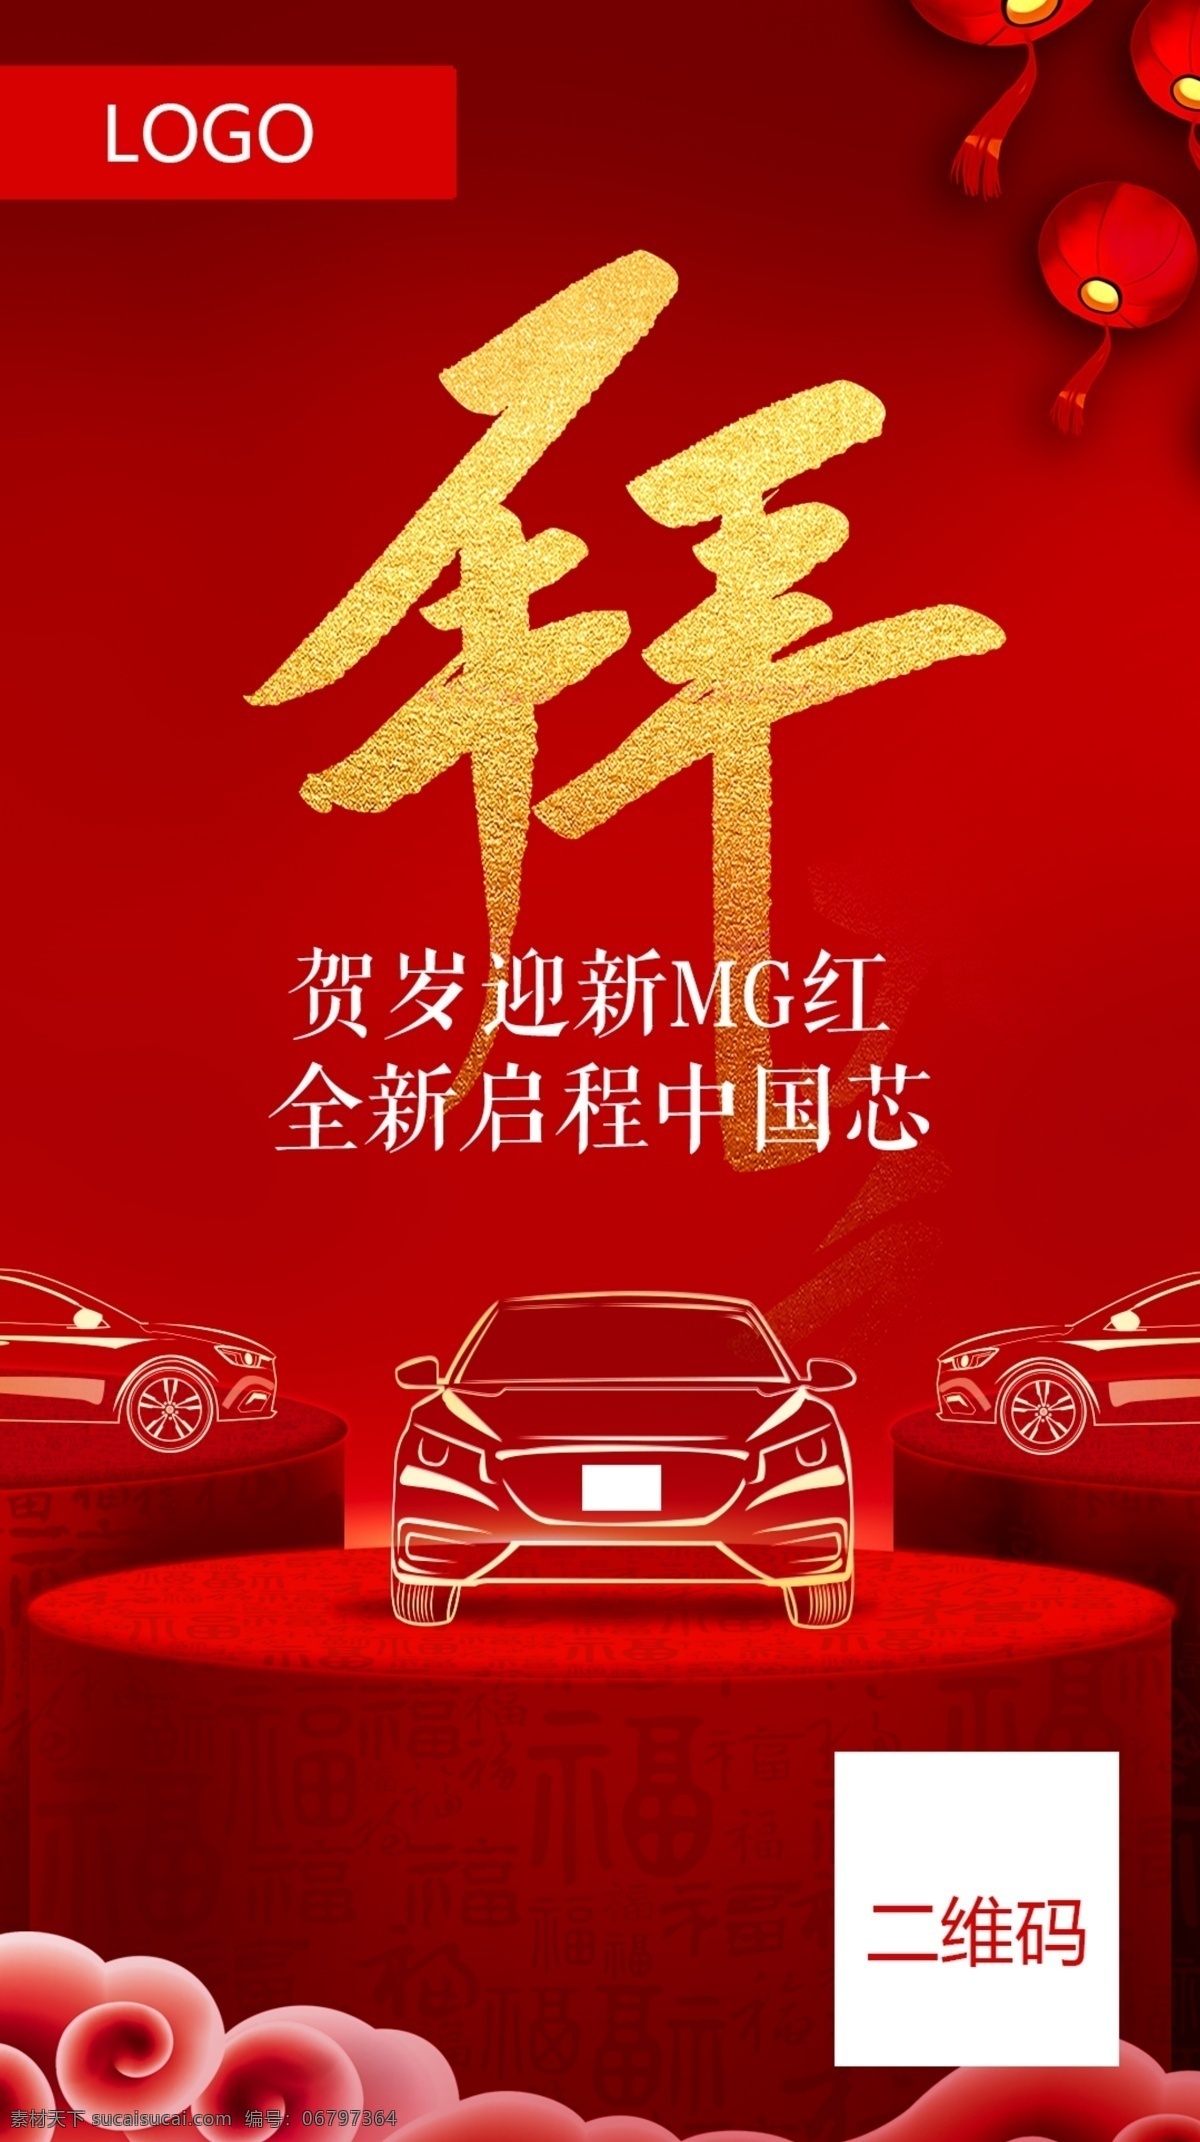 汽车 小年h5图片 小年 喜庆 庆祝 烟花 红灯笼 东风日产 红色背景 h5宣传图 新年 日产汽车广告